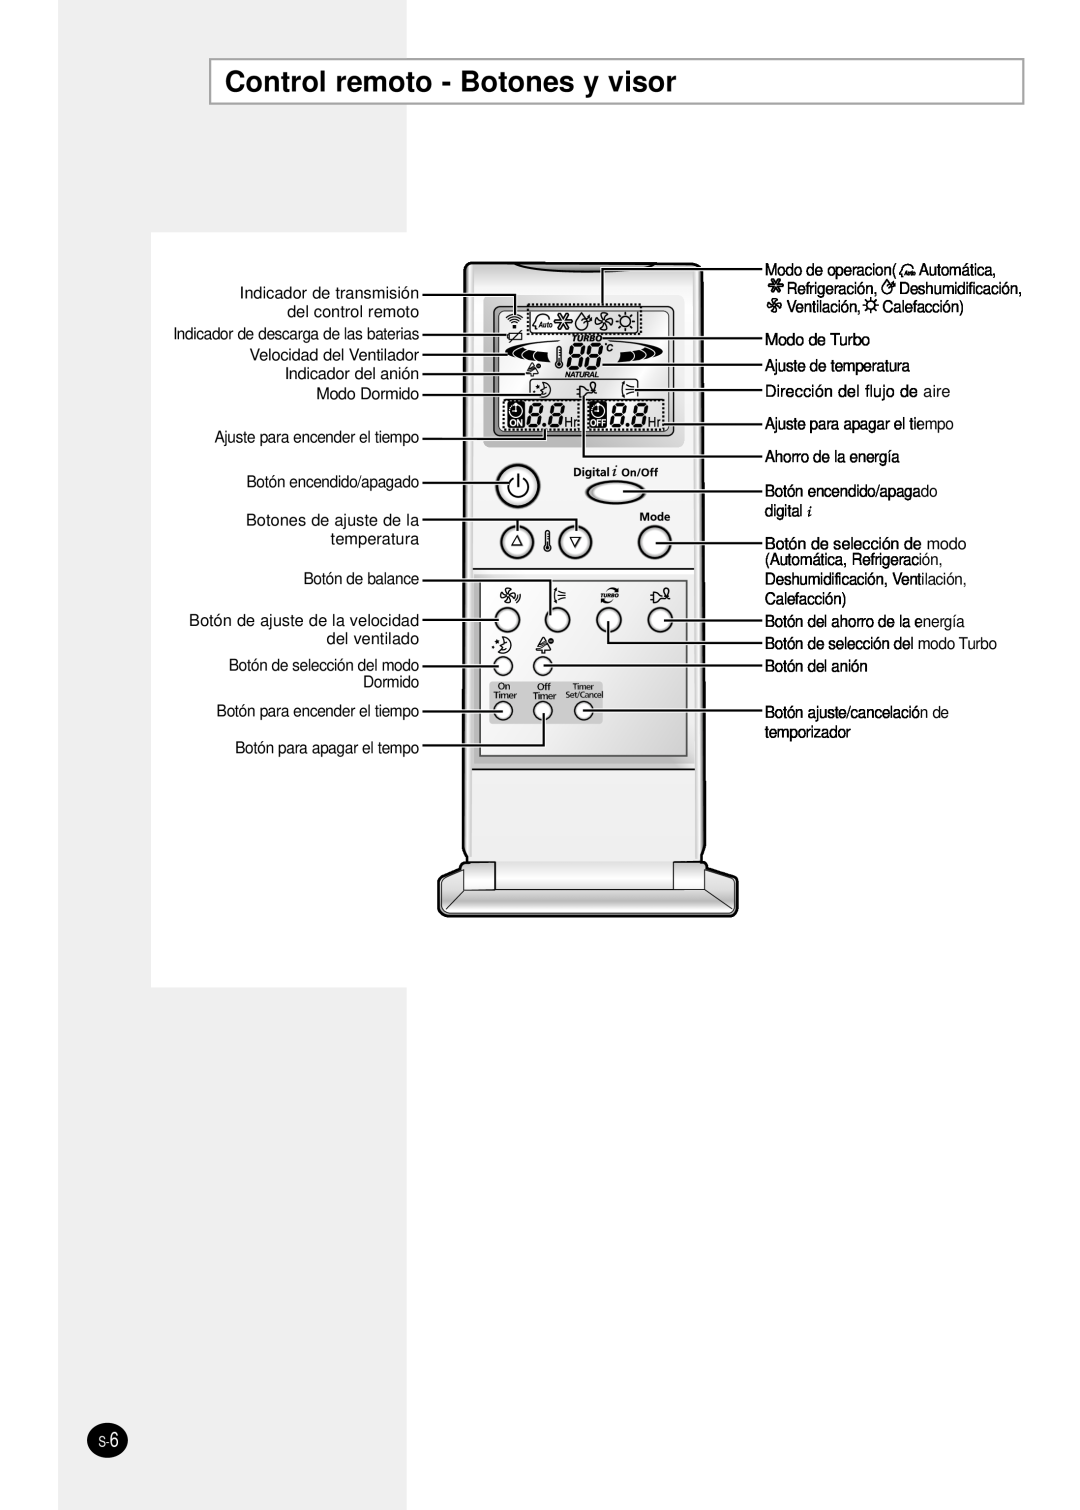 Samsung SH24TP6 Control remoto - Botones y visor, Refrigeración, Deshumidificación, Indicador de descarga de las baterias 